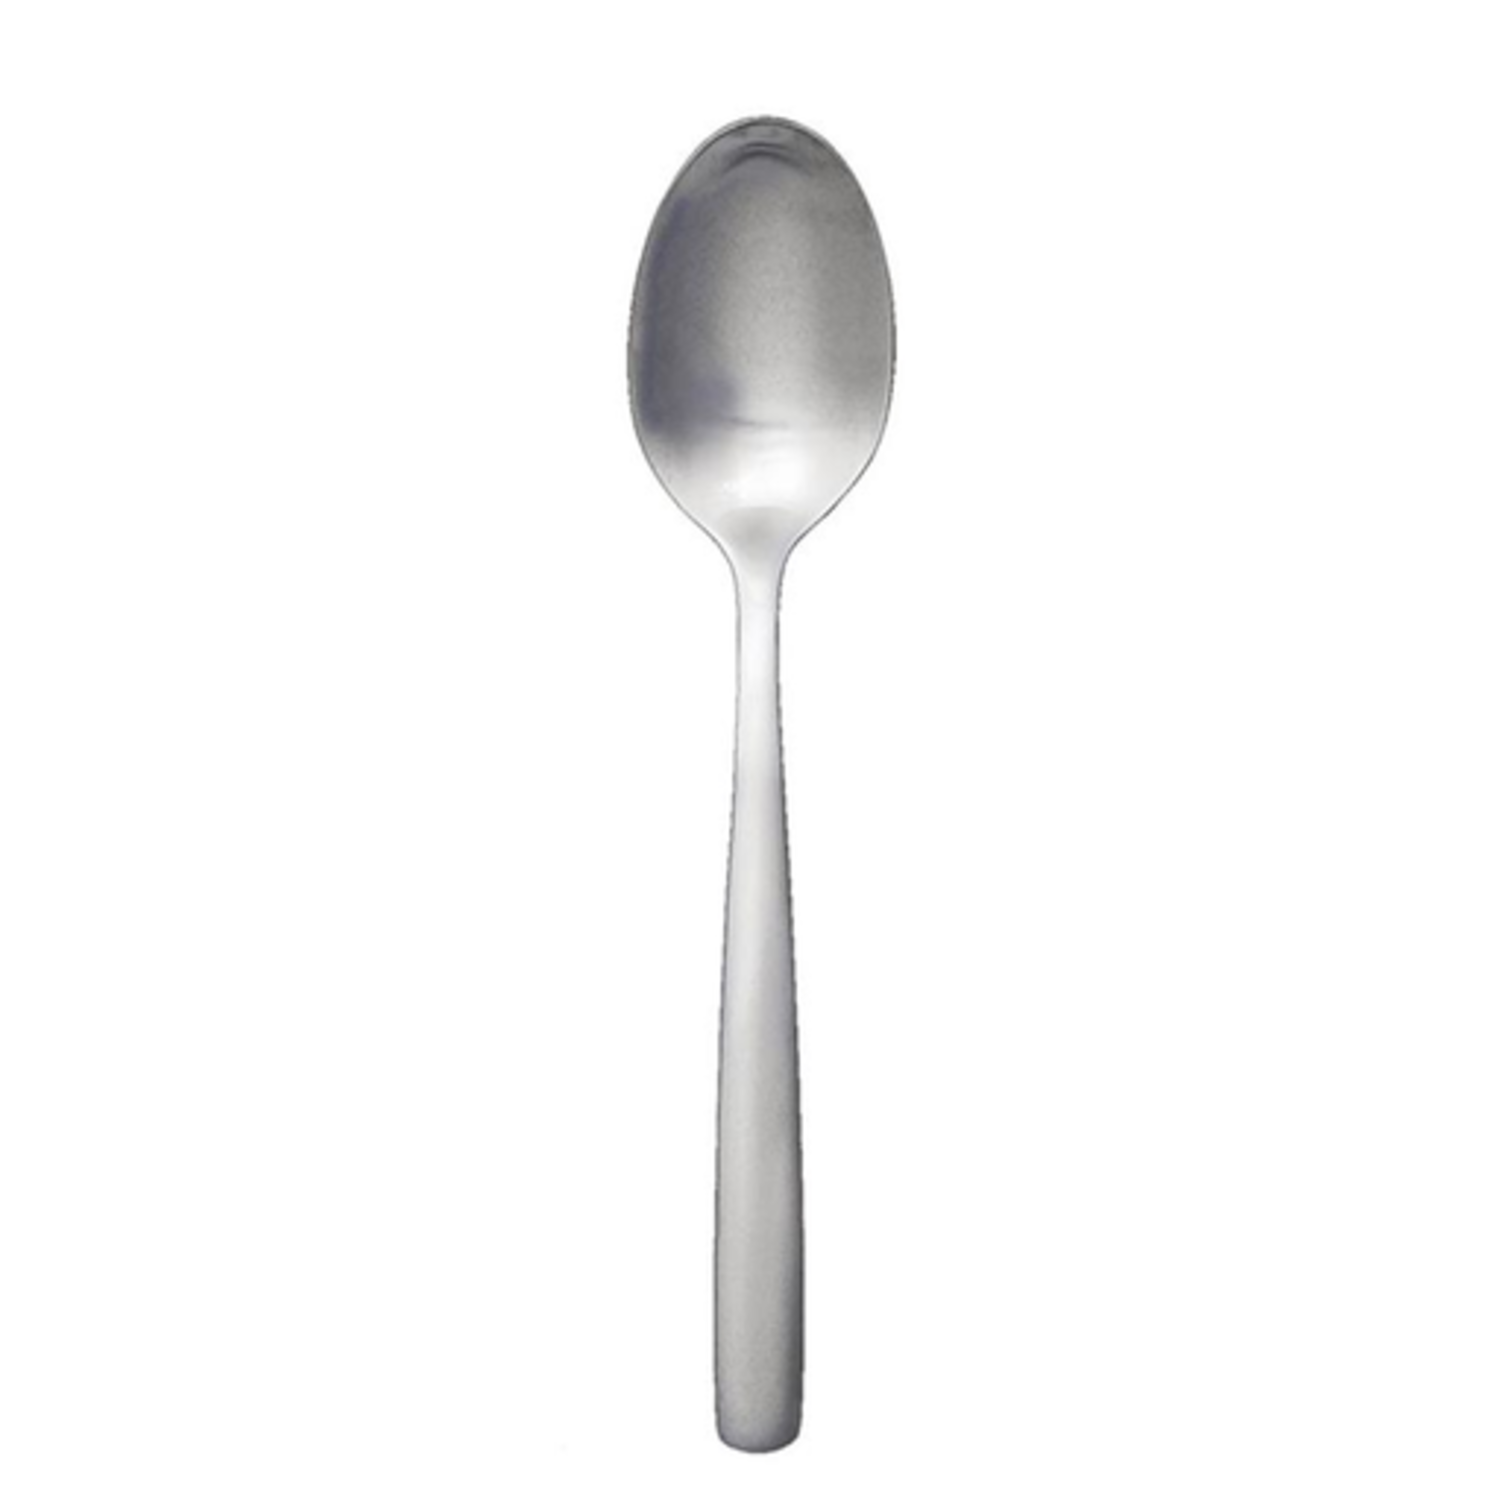 https://cdn.shoplightspeed.com/shops/633447/files/18100636/1500x4000x3/simple-stainless-steel-soup-spoon.jpg